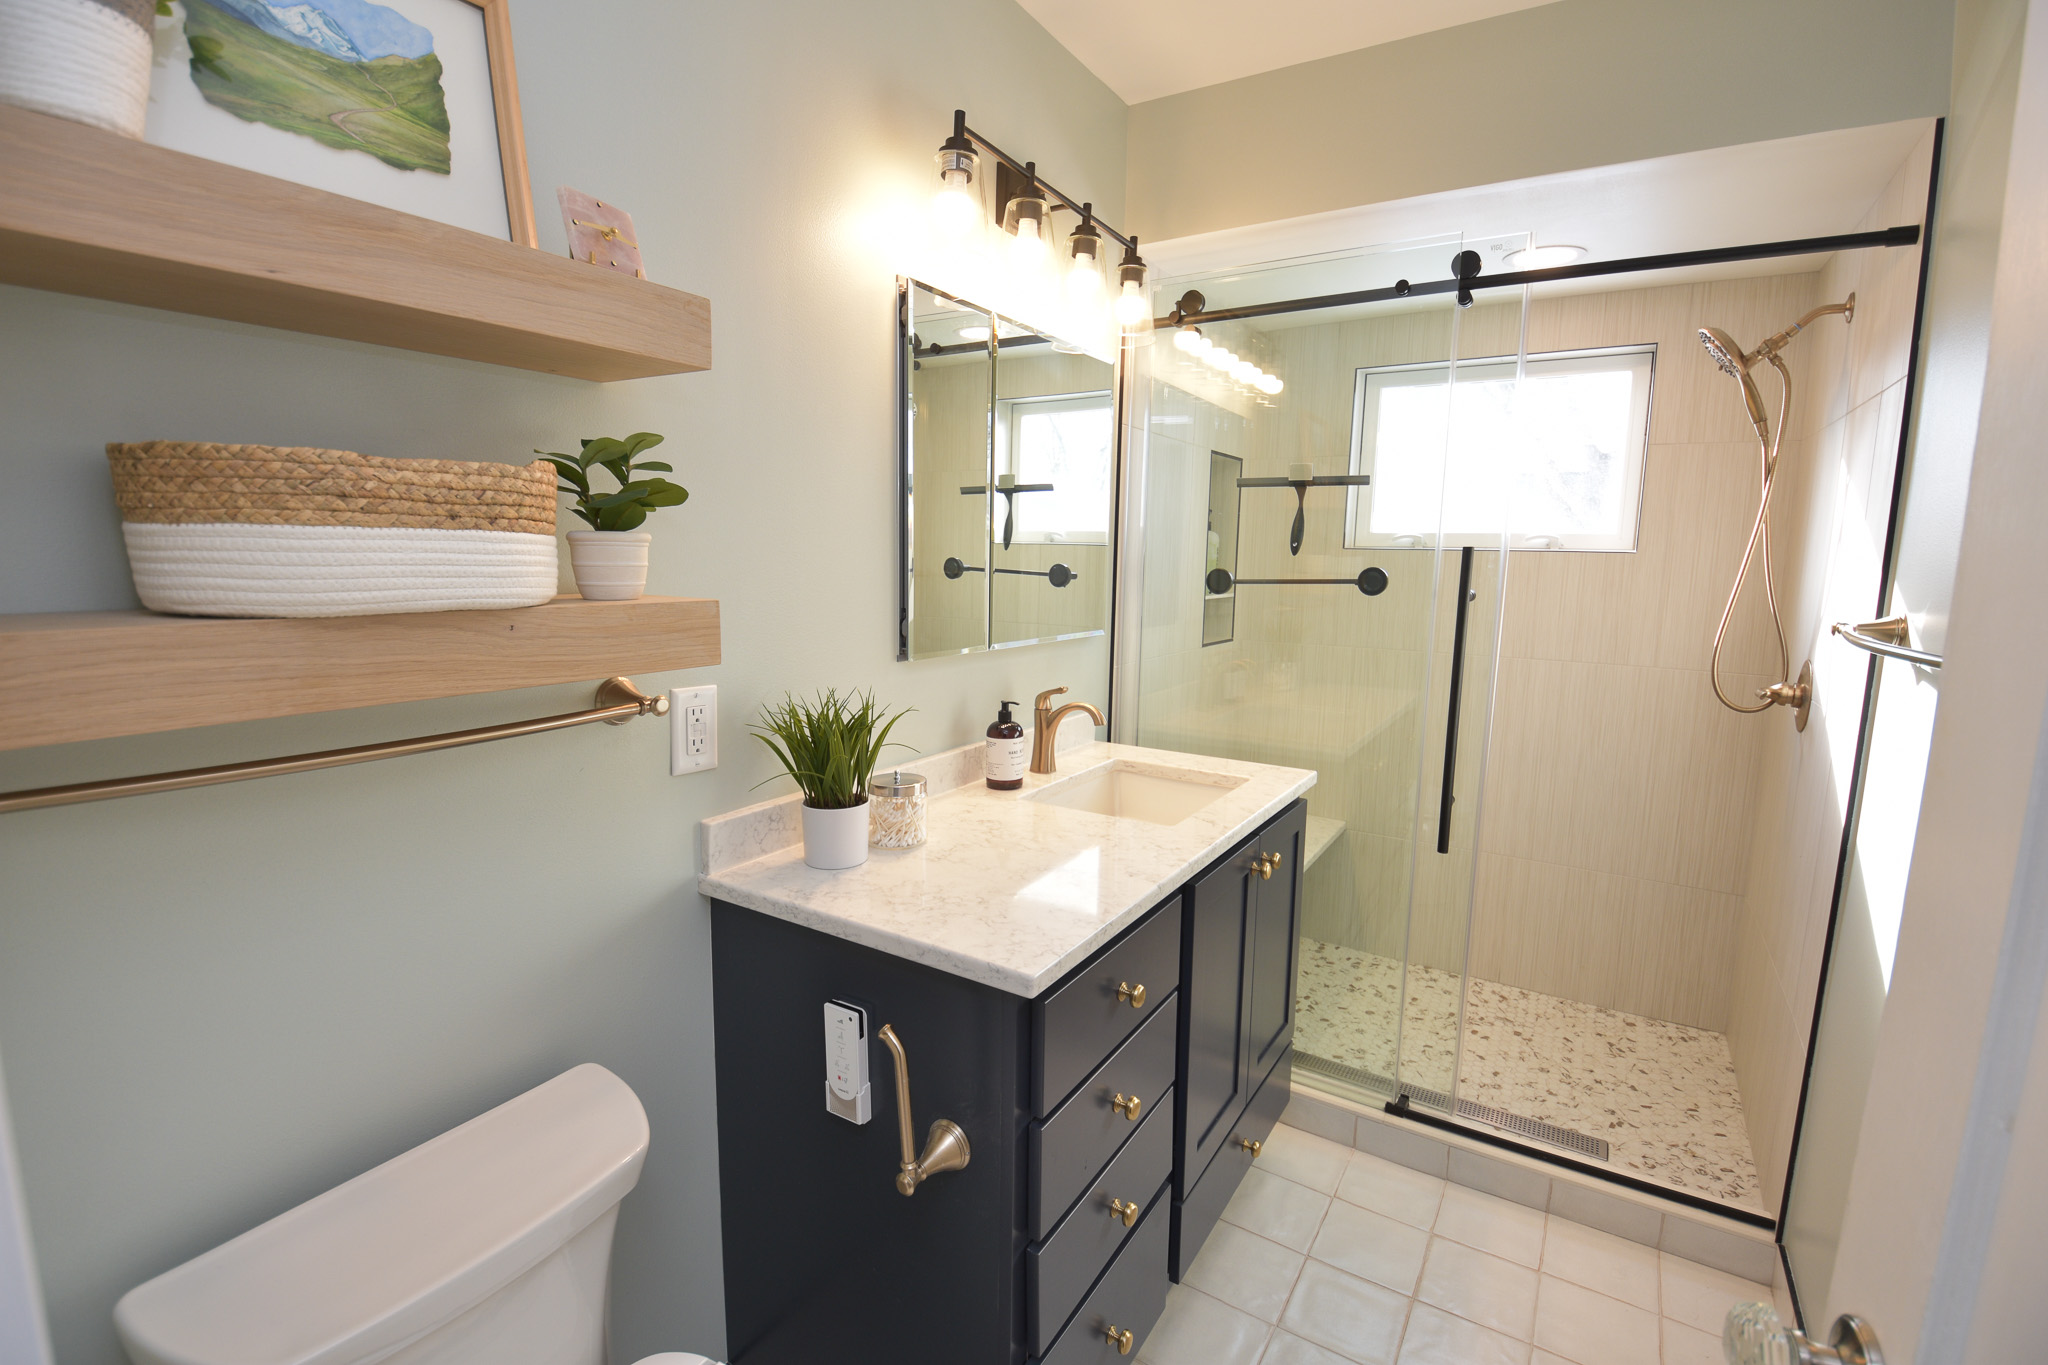 Bathroom remodel - toilet, vanity, mirror, lighting, glass door shower